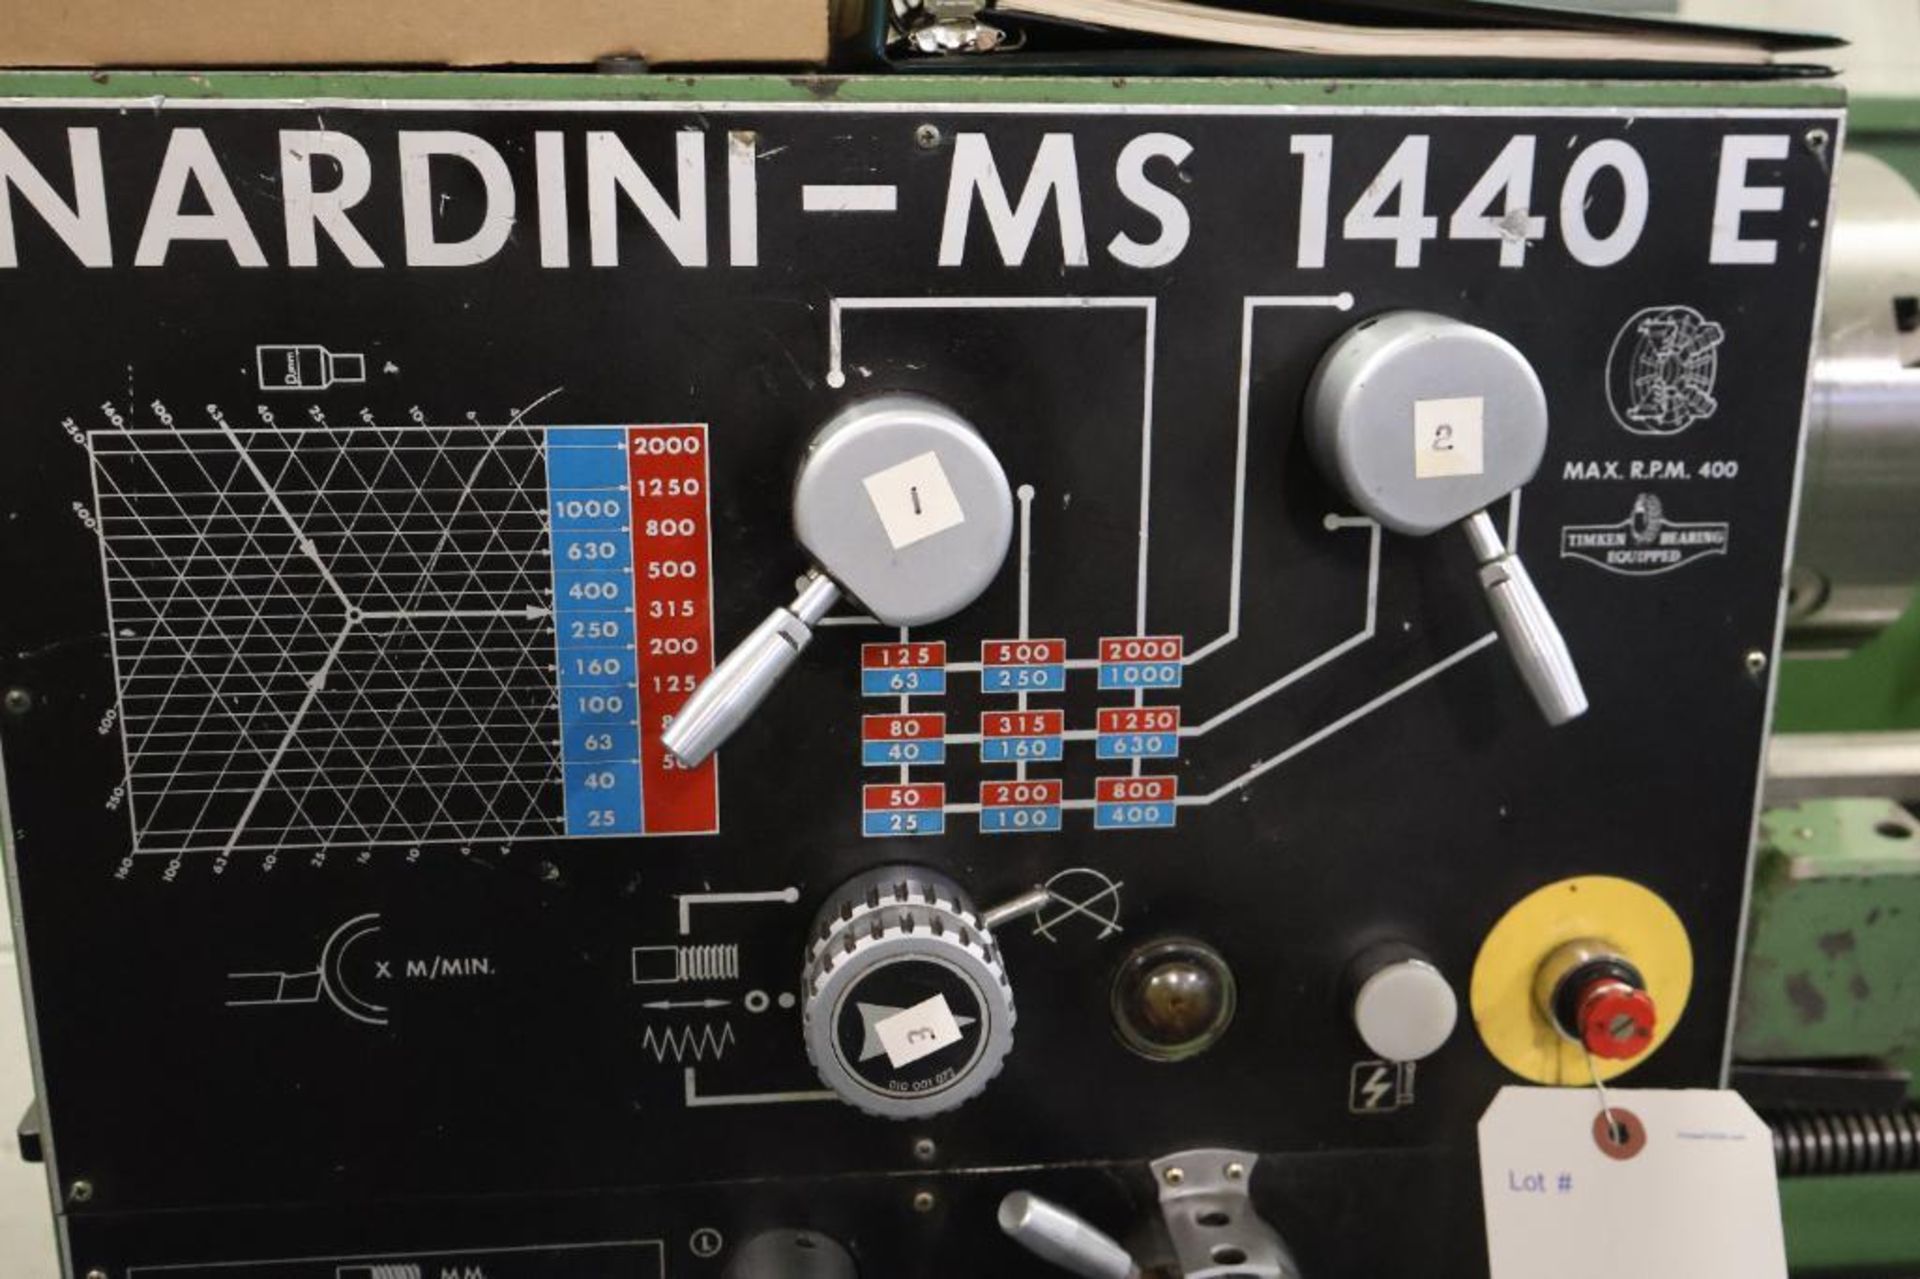 Nardini MS 1440 E engine lathe - Image 10 of 22